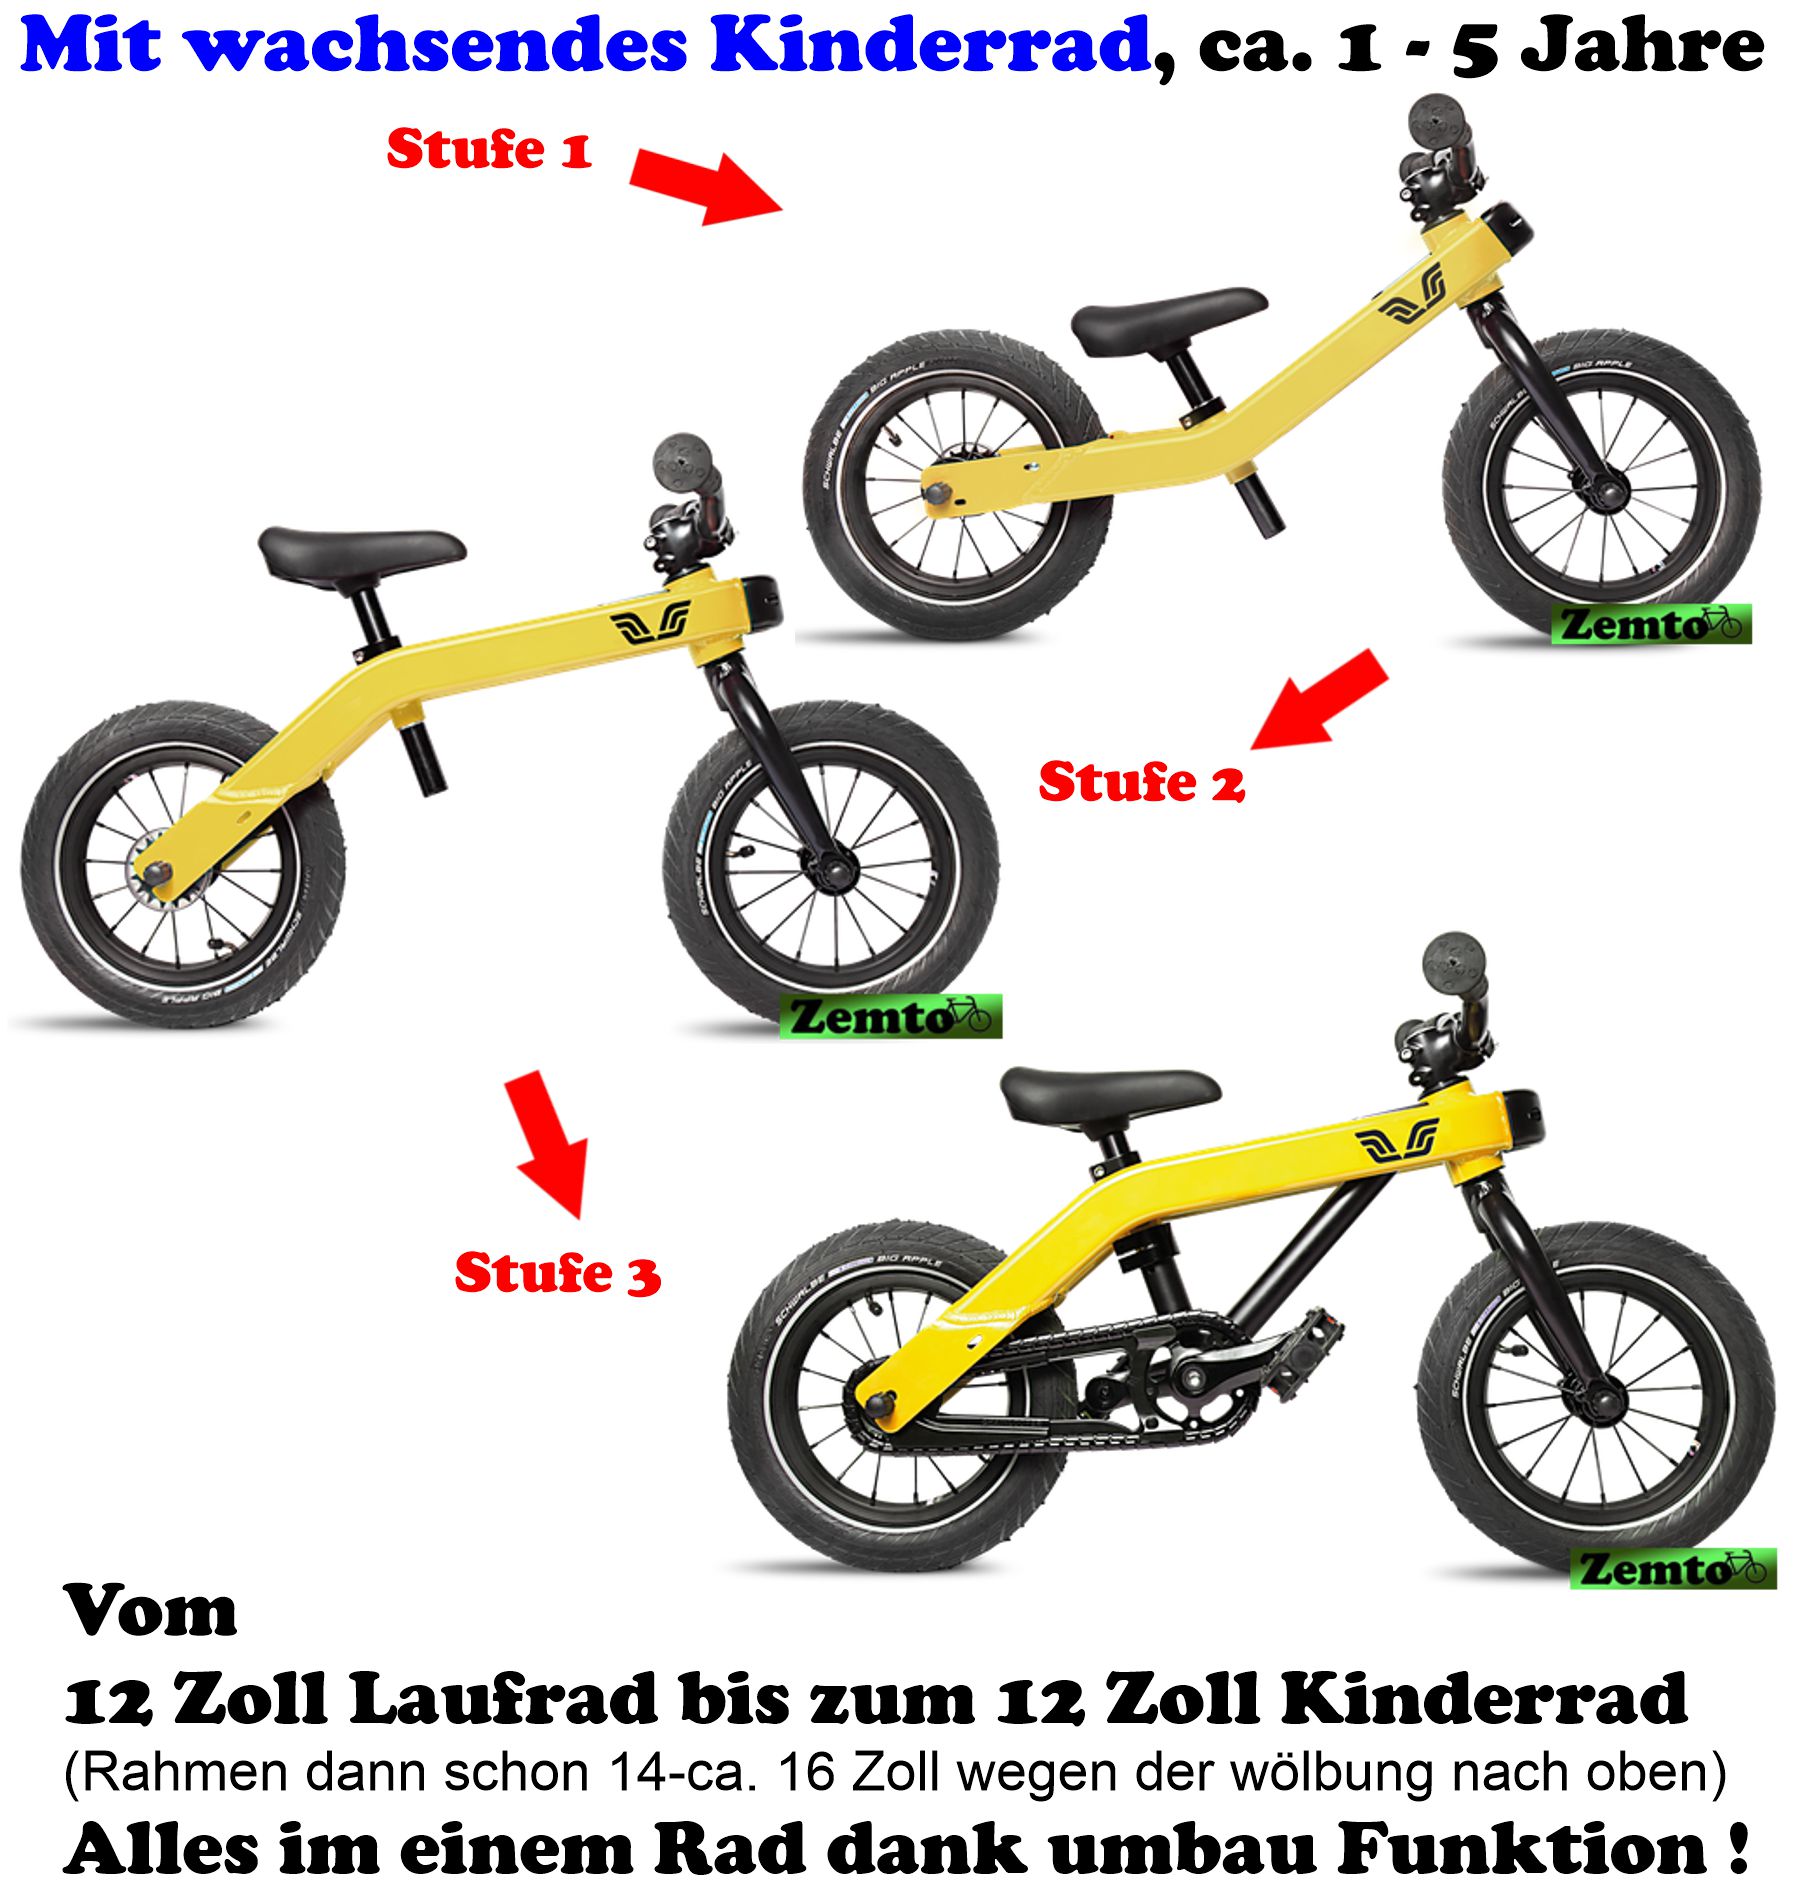 Zemto - Laufrad, 12 Zoll Kinderrad, Vici Fahrrad, mit wachsendes